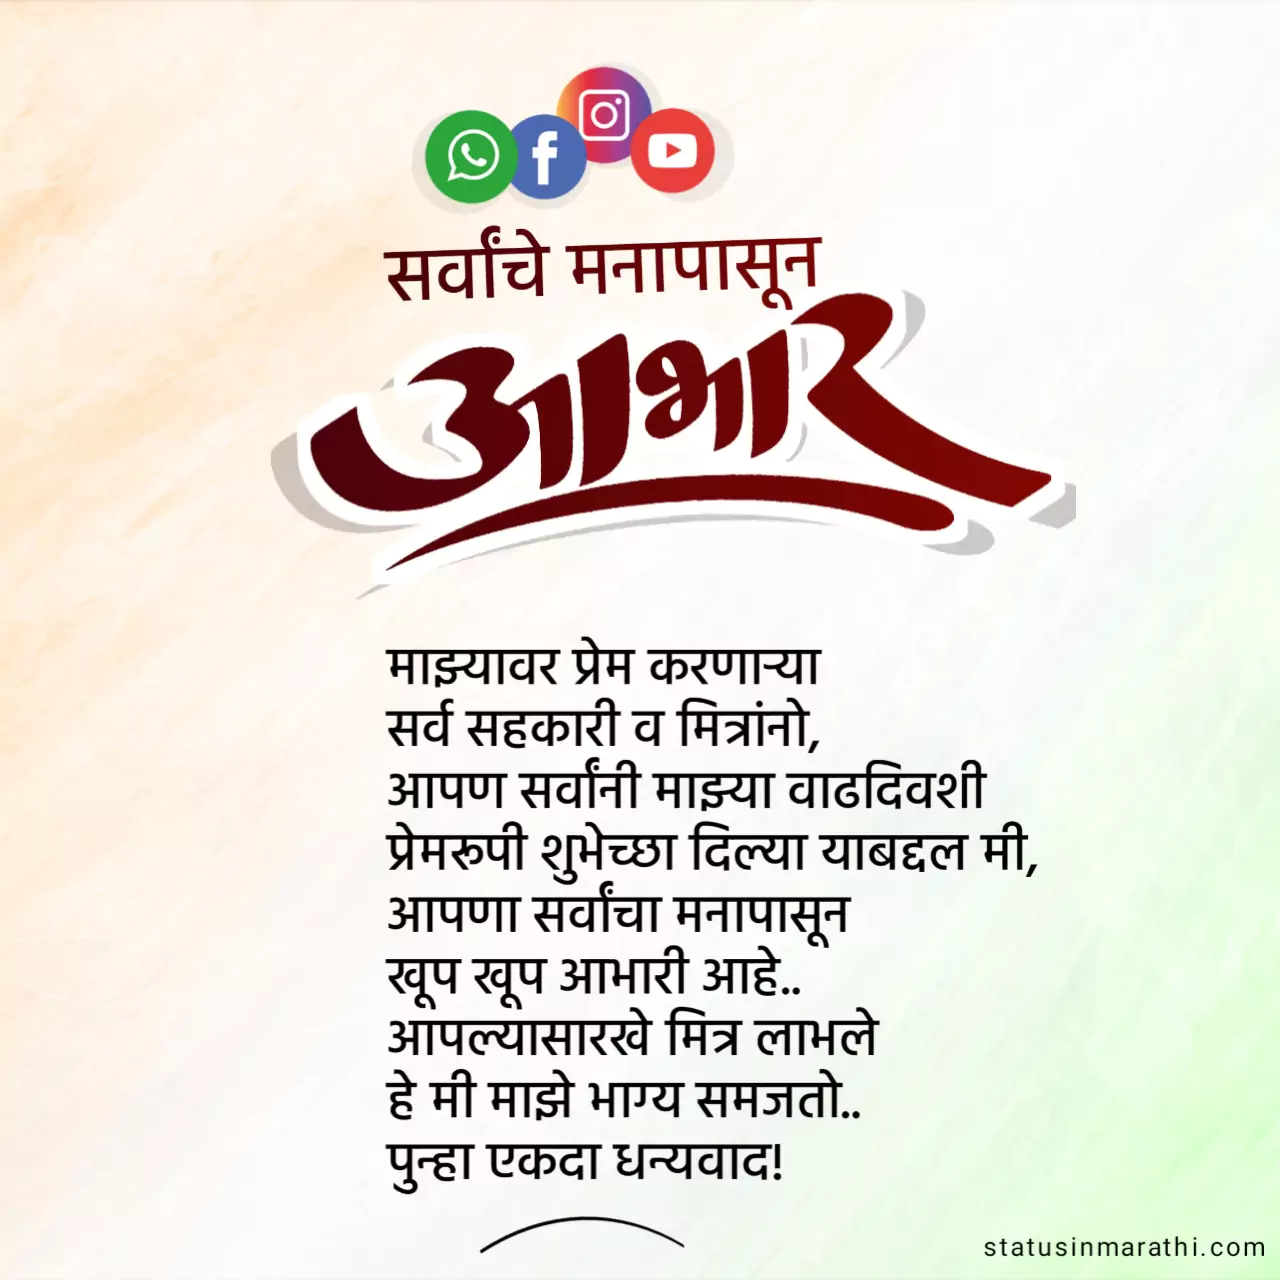 Birthday thanks in marathi